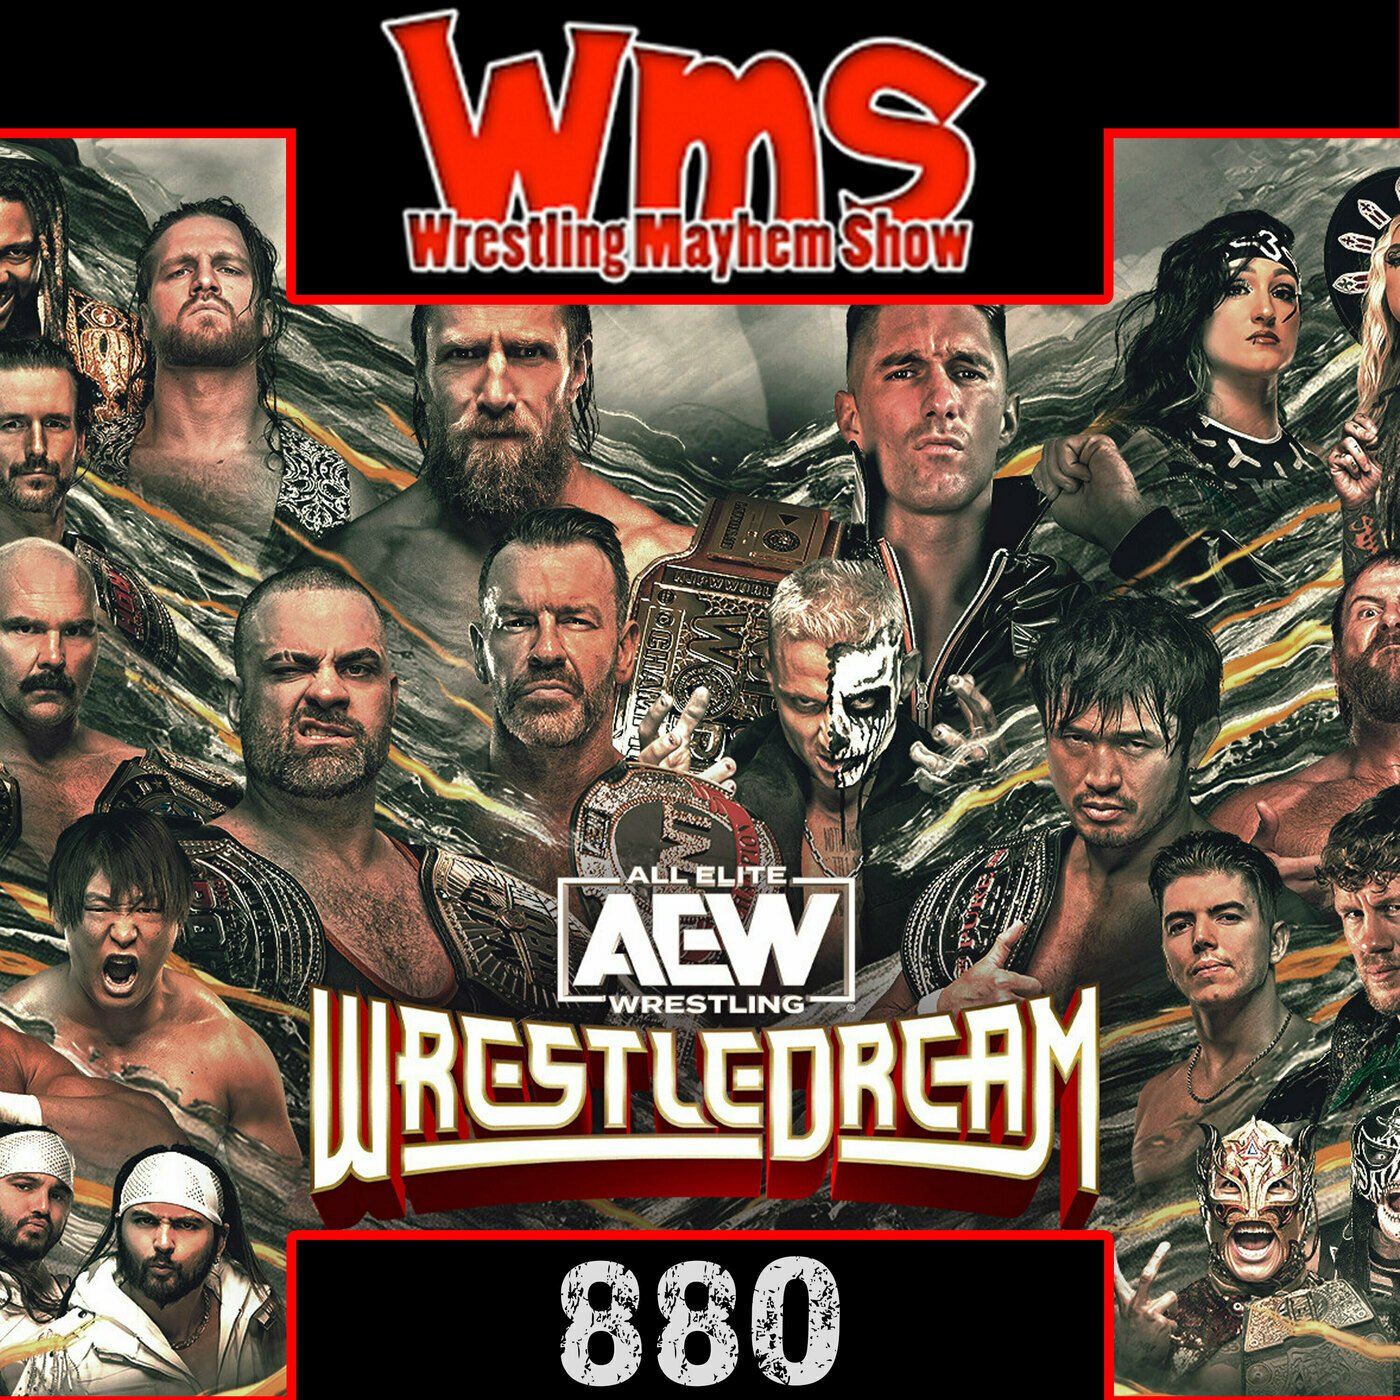 Sorgatron Media Master Feed: Wrestling Mayhem Show 880: A WrestleDream of Little or No Mercy